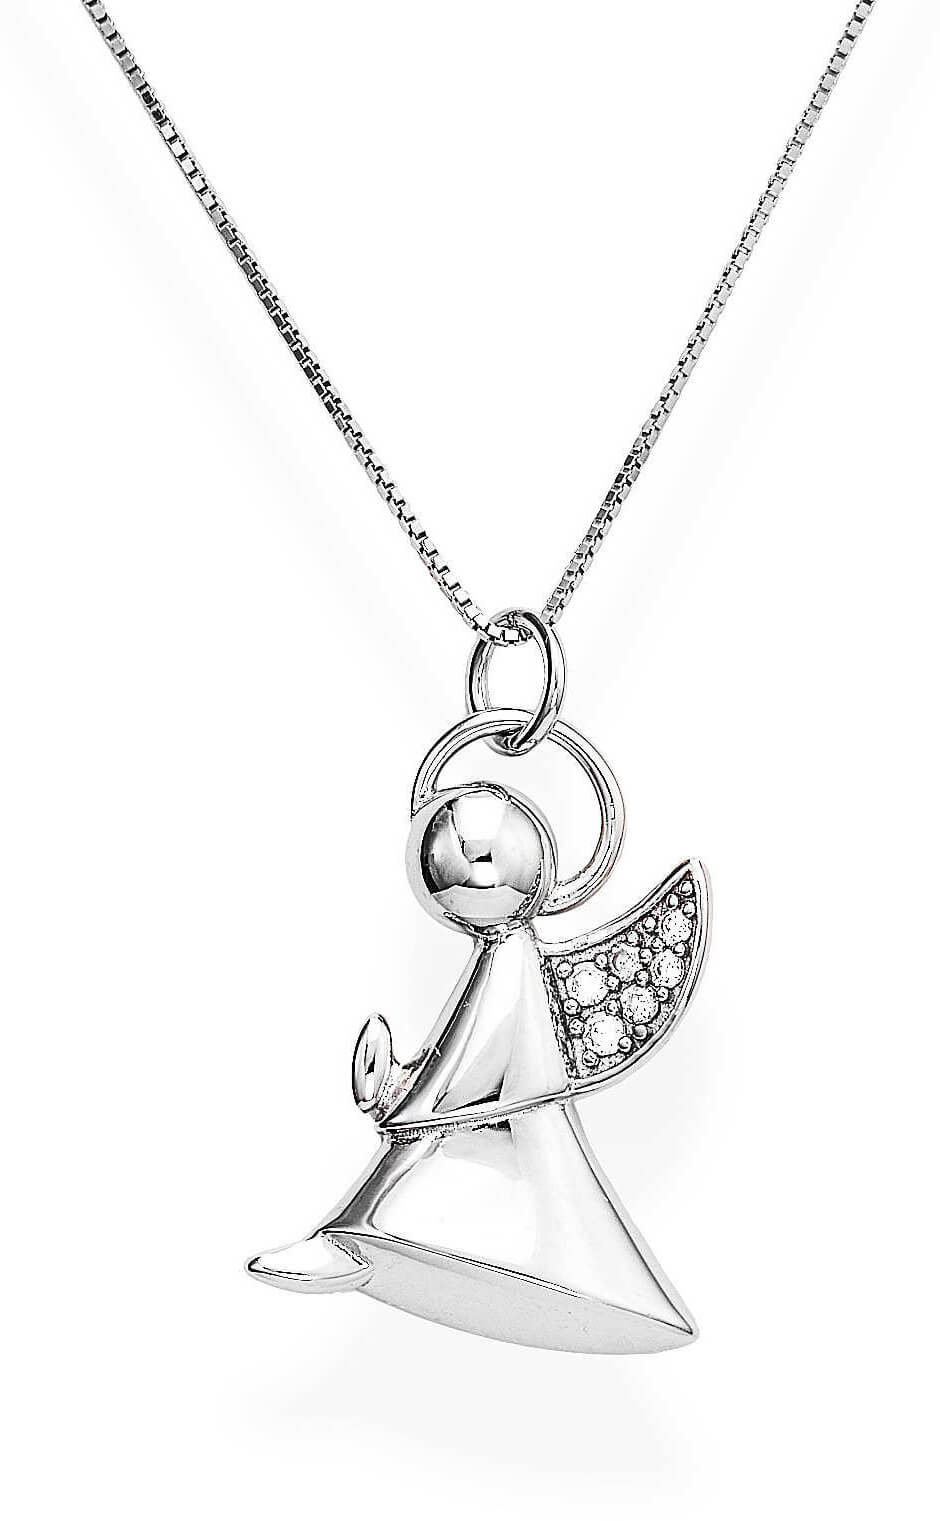 Amen Půvabný stříbrný náhrdelník se zirkony Angels A5BB (řetízek, přívěsek)